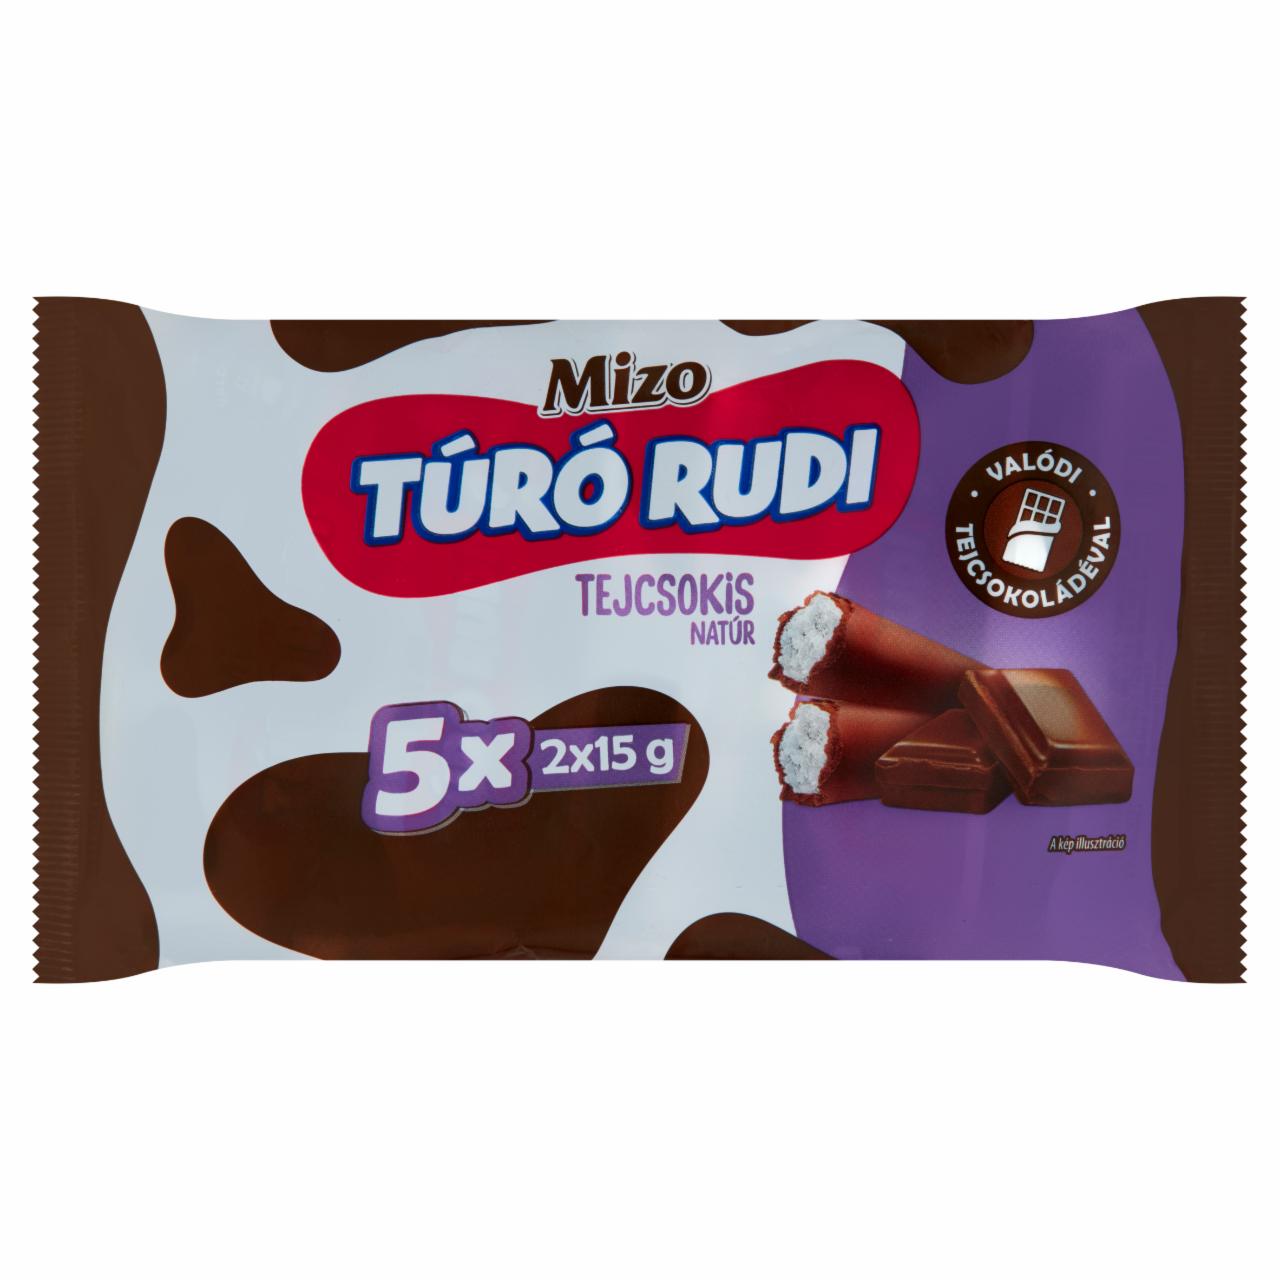 Képek - Mizo Túró Rudi natúr túródesszert tejcsokoládé bevonattal 5 x 2 x 15 g (150 g)